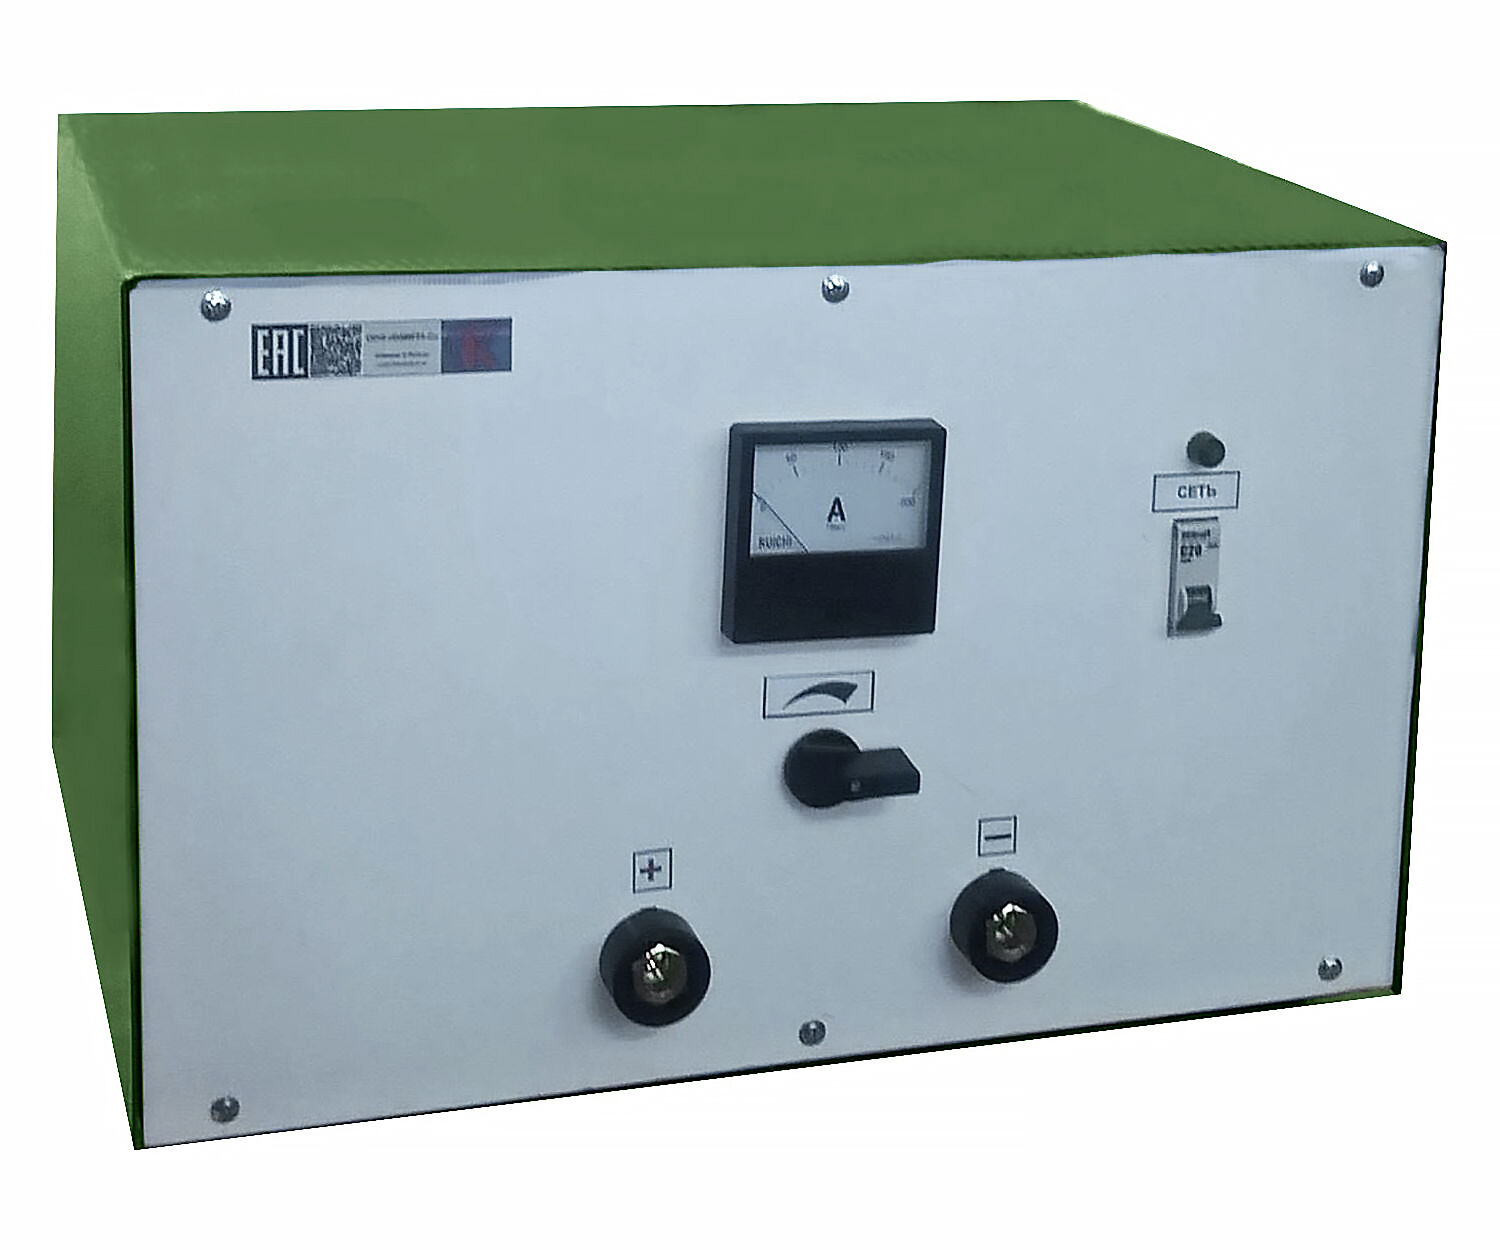 Зарядное устройство для тяговых и емкостных АКБ ЗУ-1К(12-24)